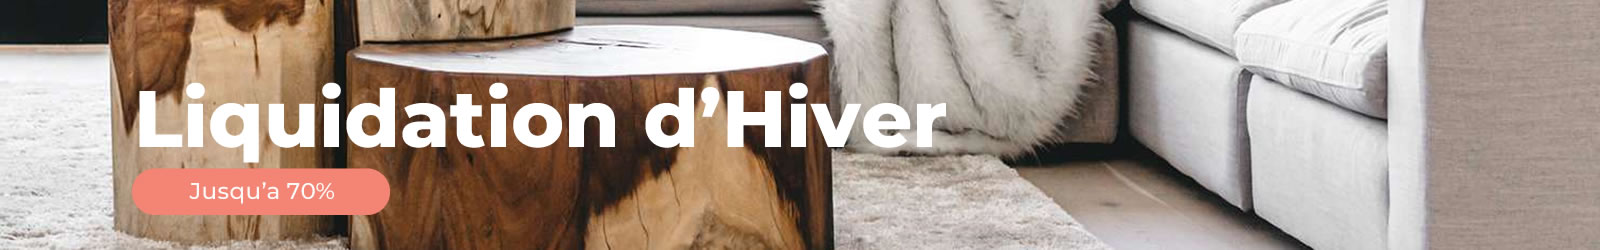 Liquidation d'Hiver